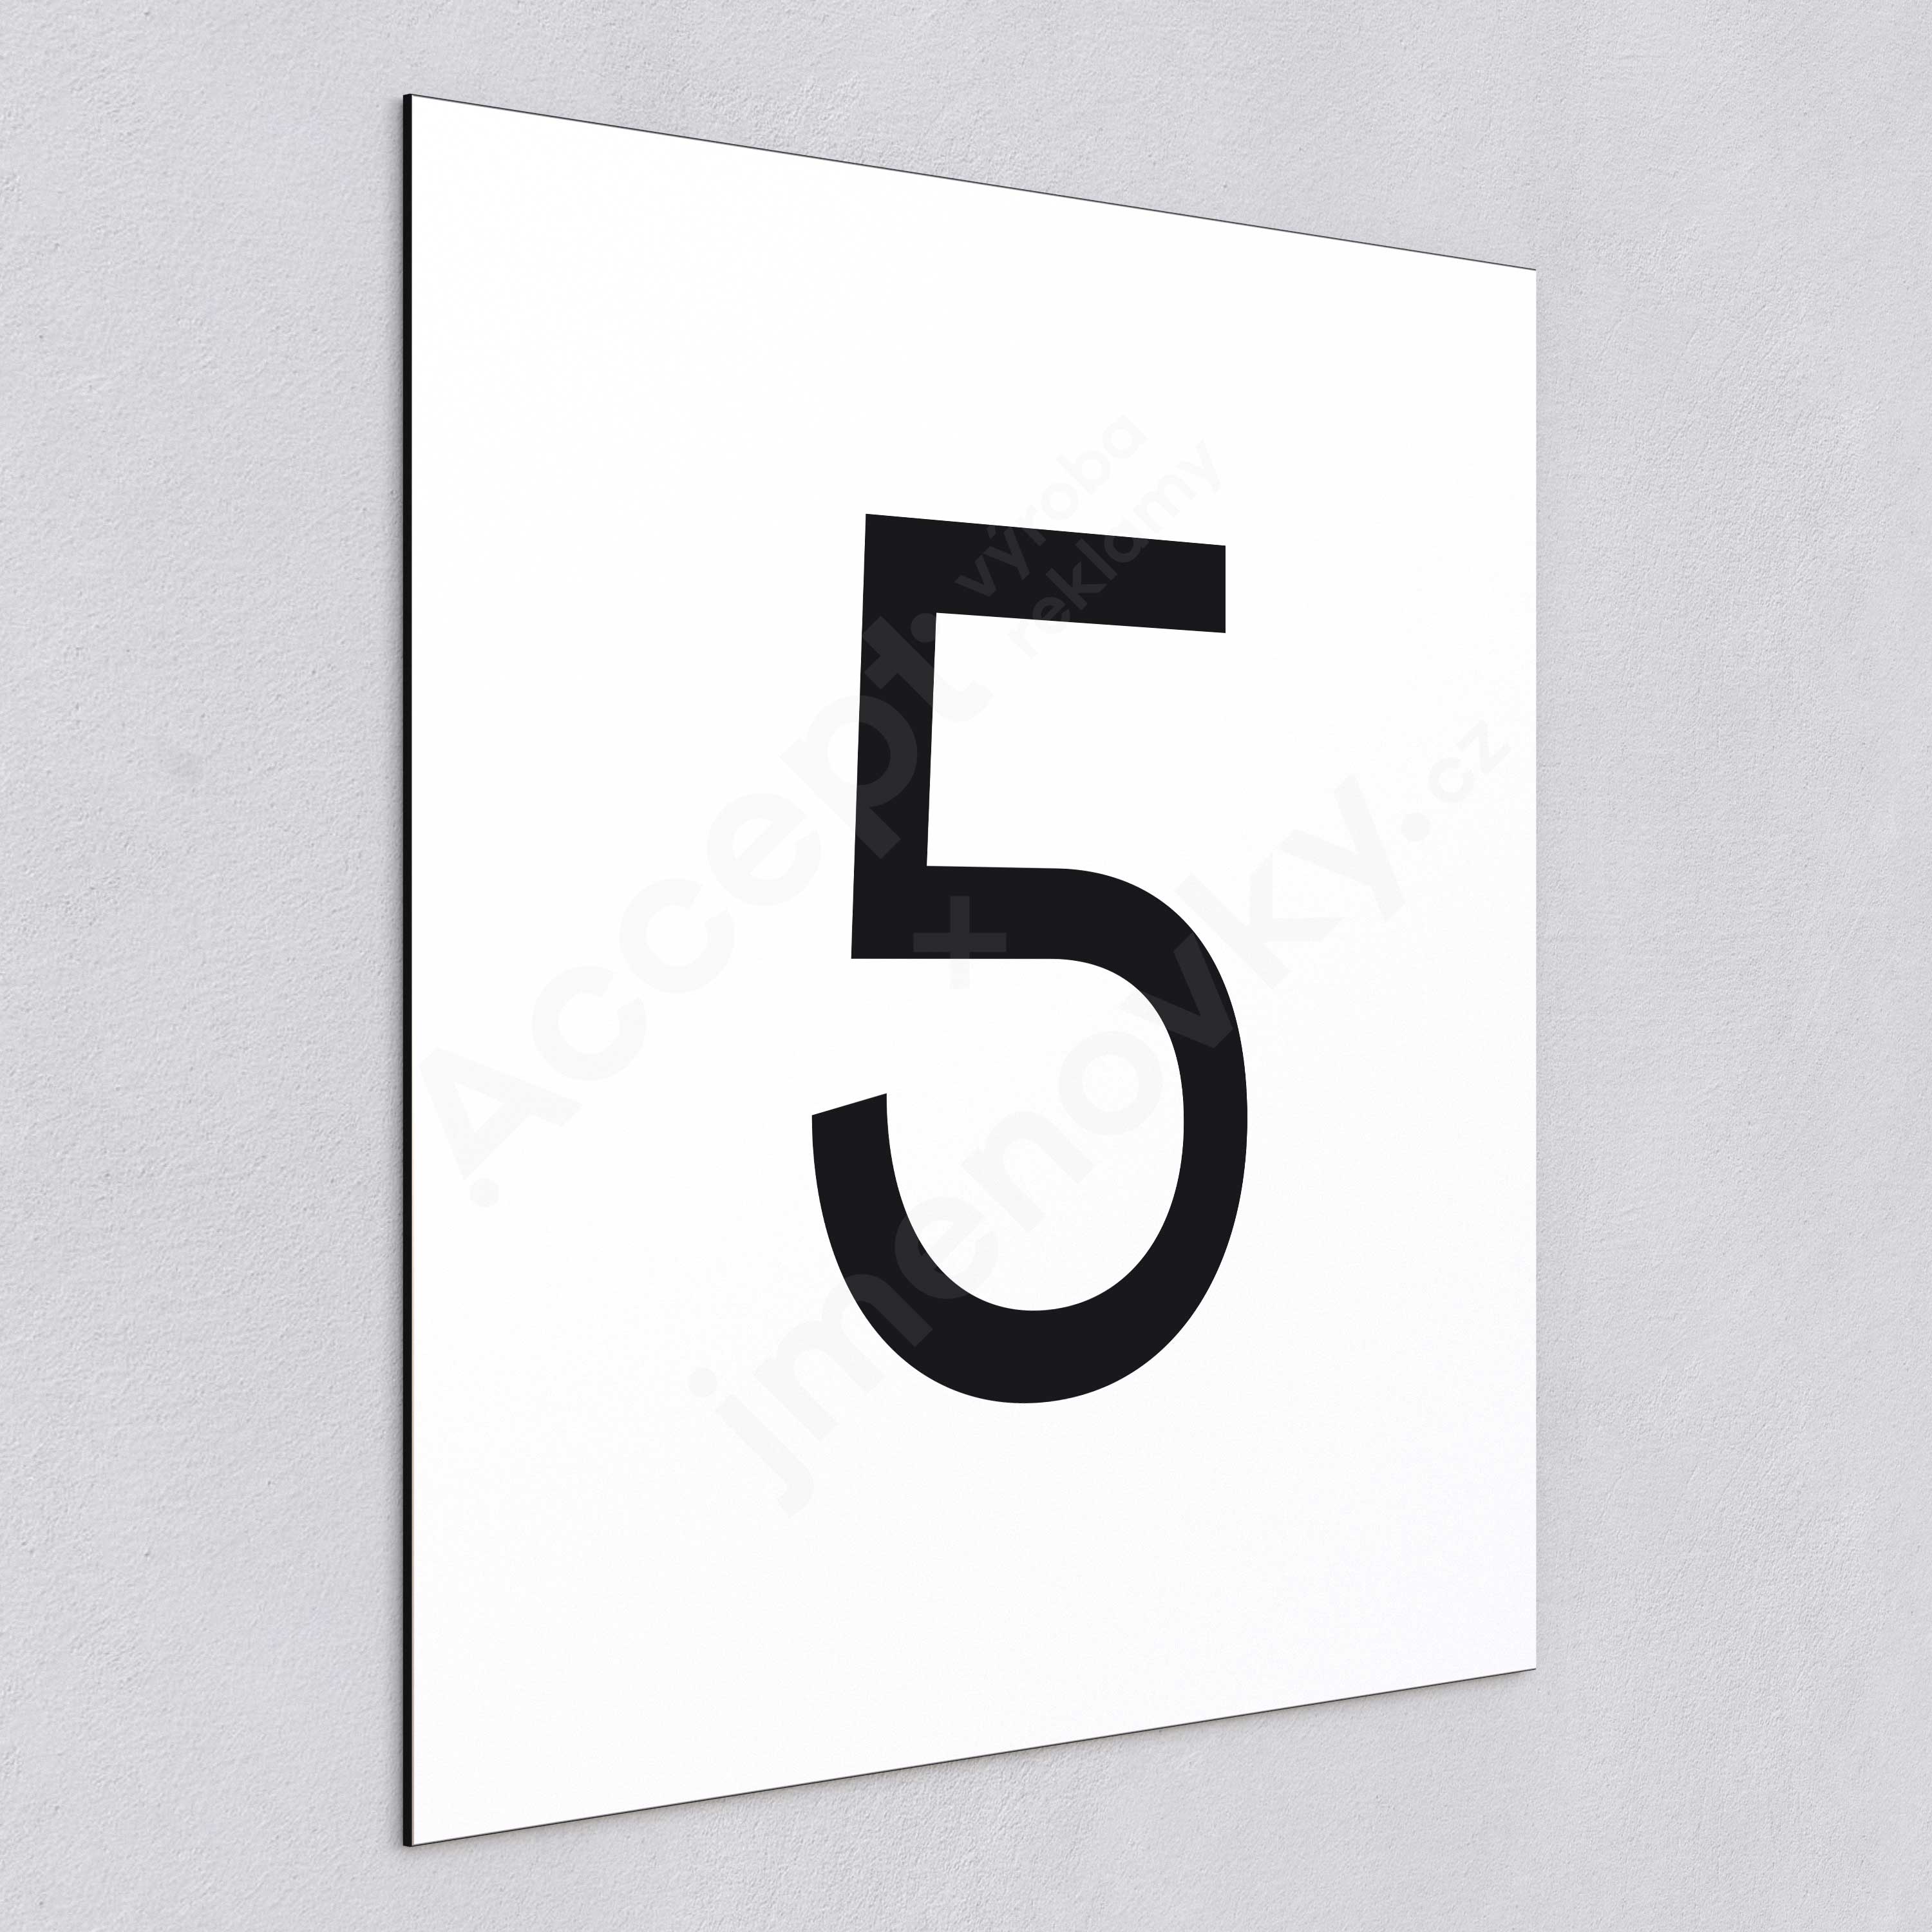 Označení podlaží - číslo "5" - bílá tabulka - černý popis